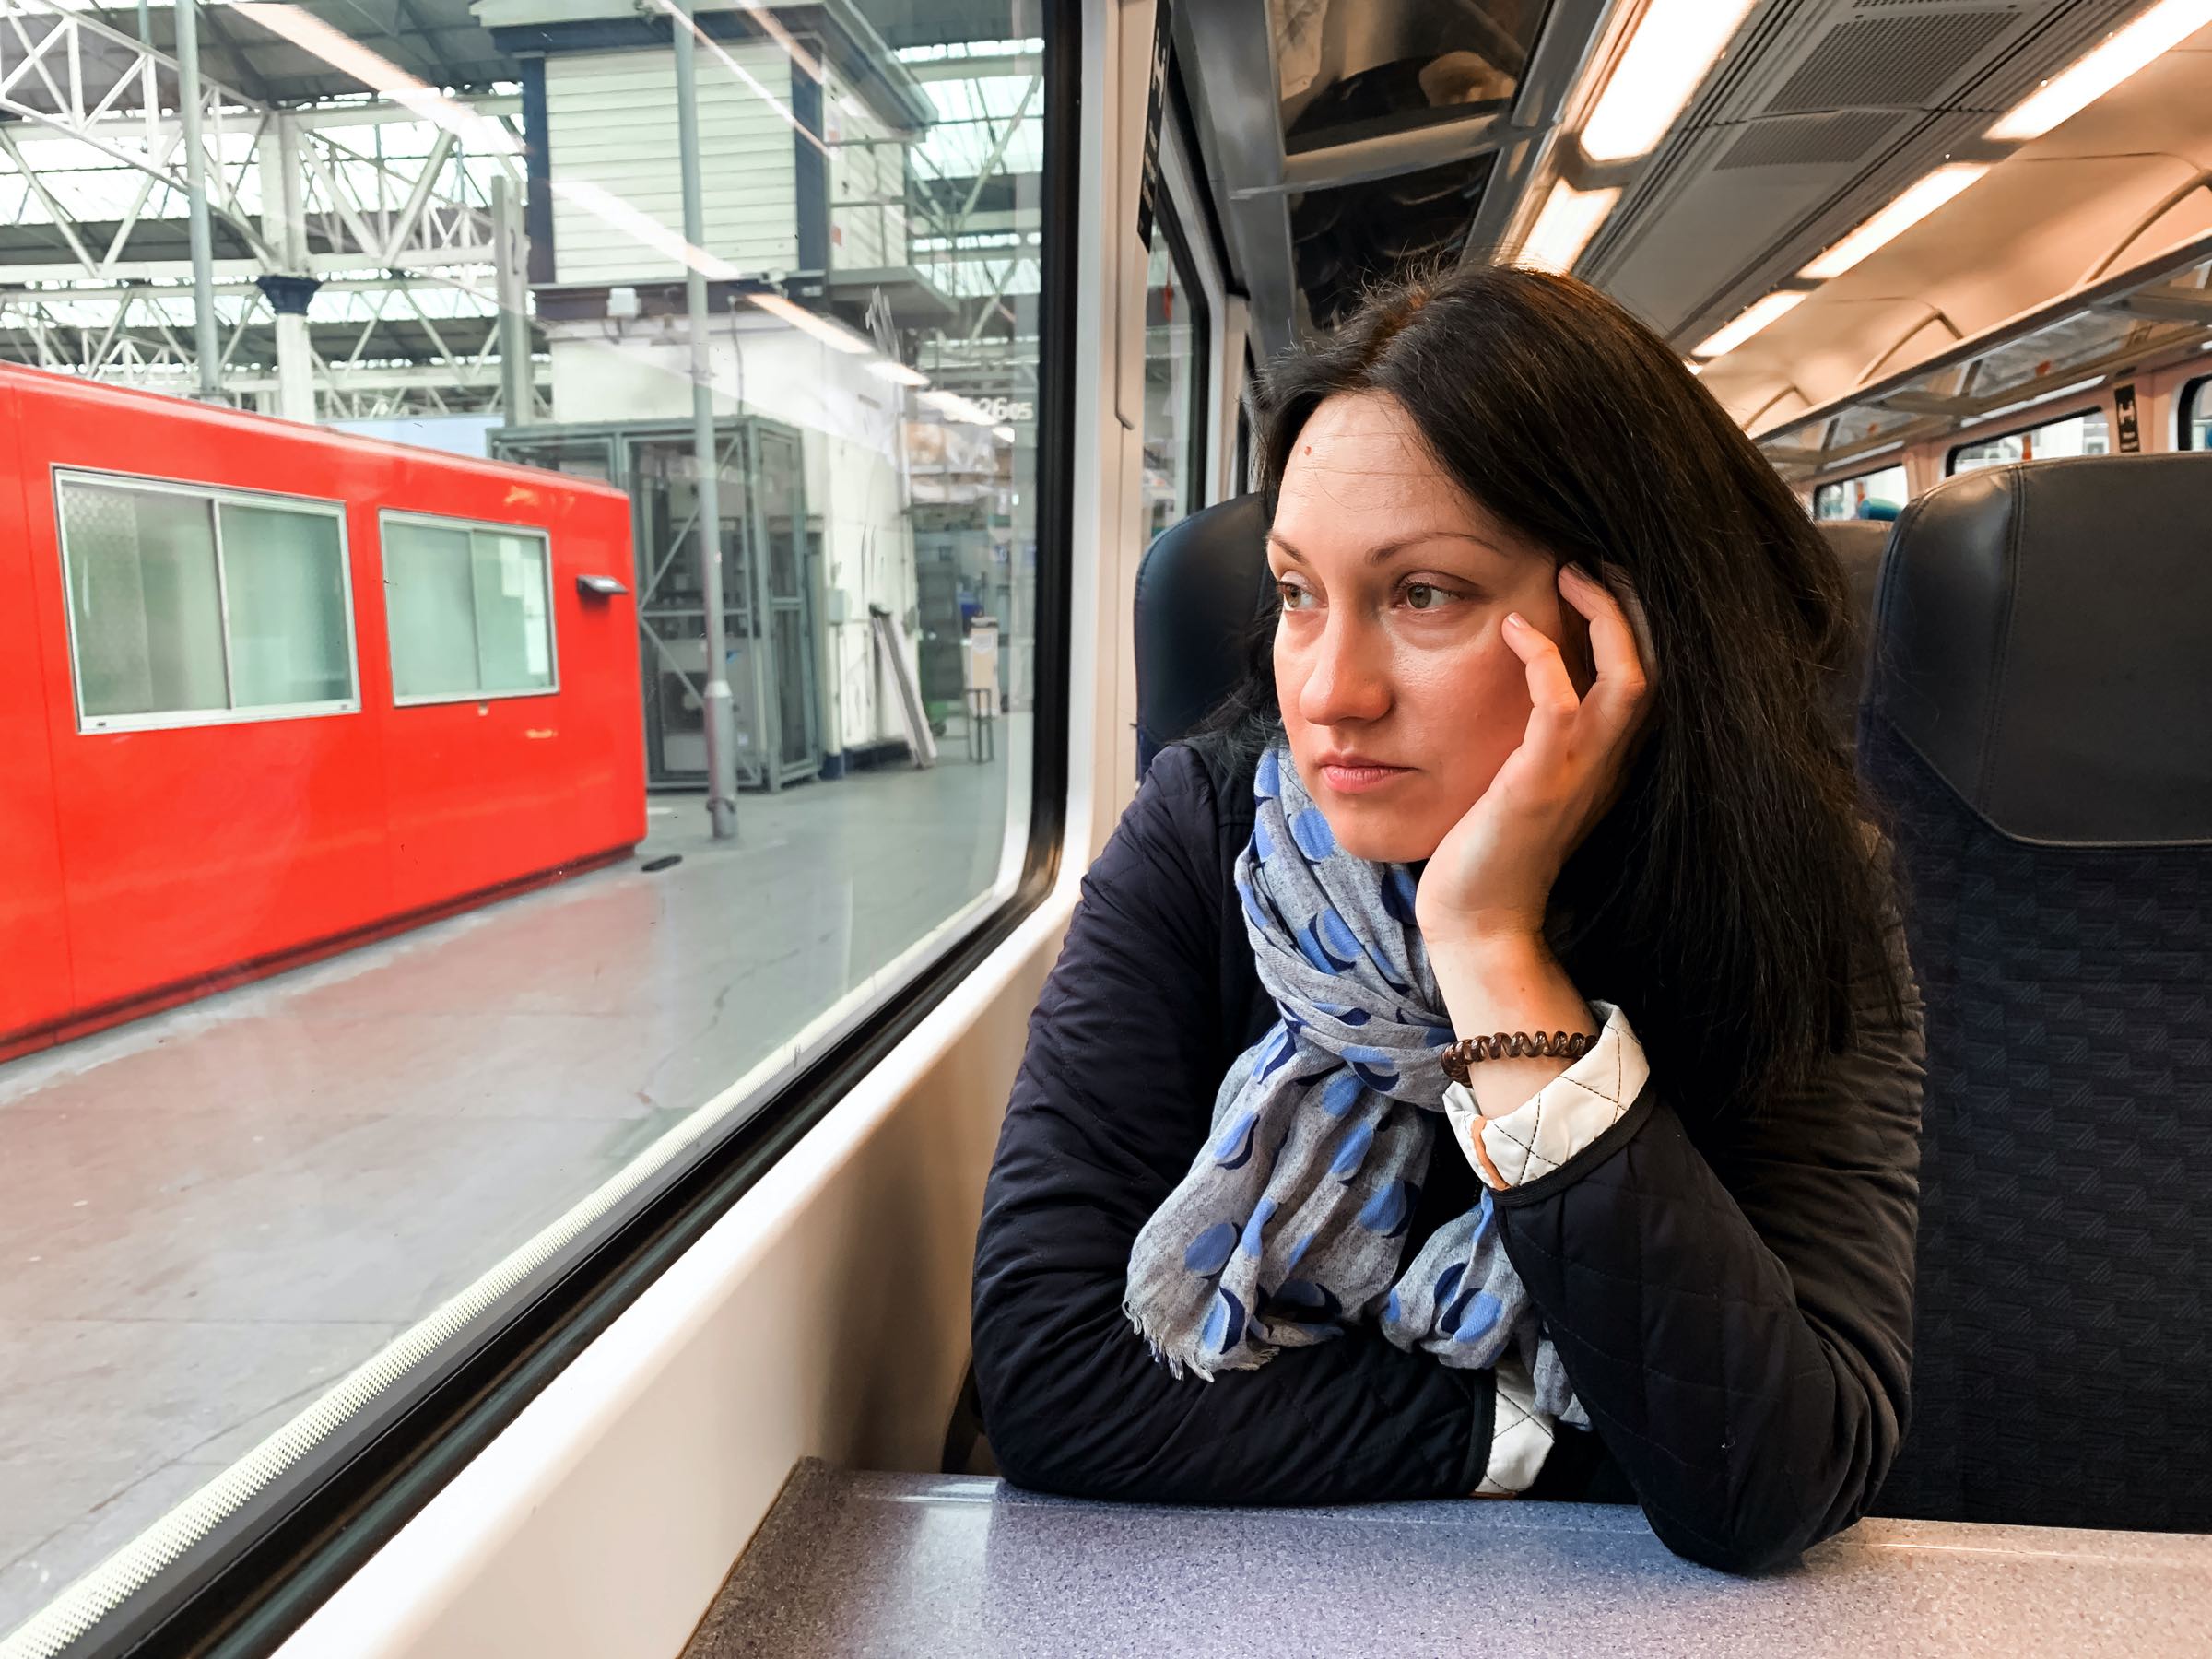 Znudzona kobieta w pociągu, ilustracja do artykułu